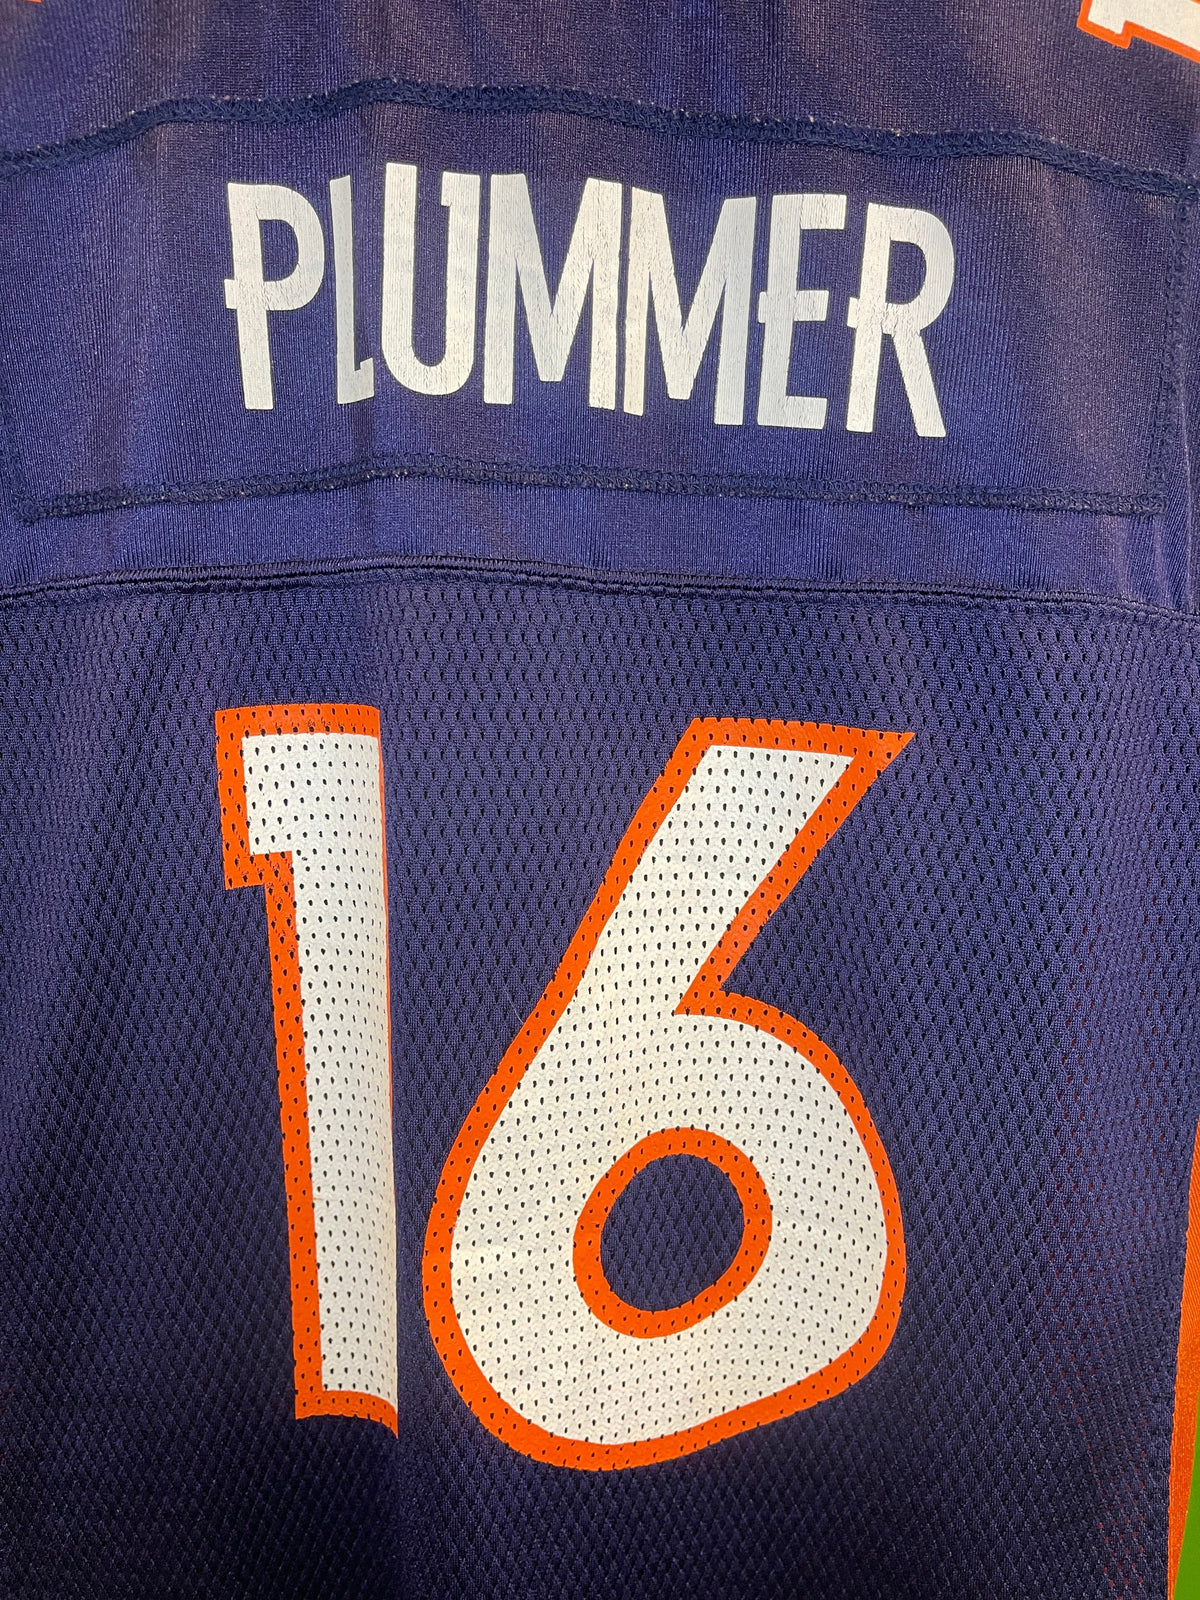 NFL Denver Broncos Jake Plummer #16 Jersey Youth Large 14-16